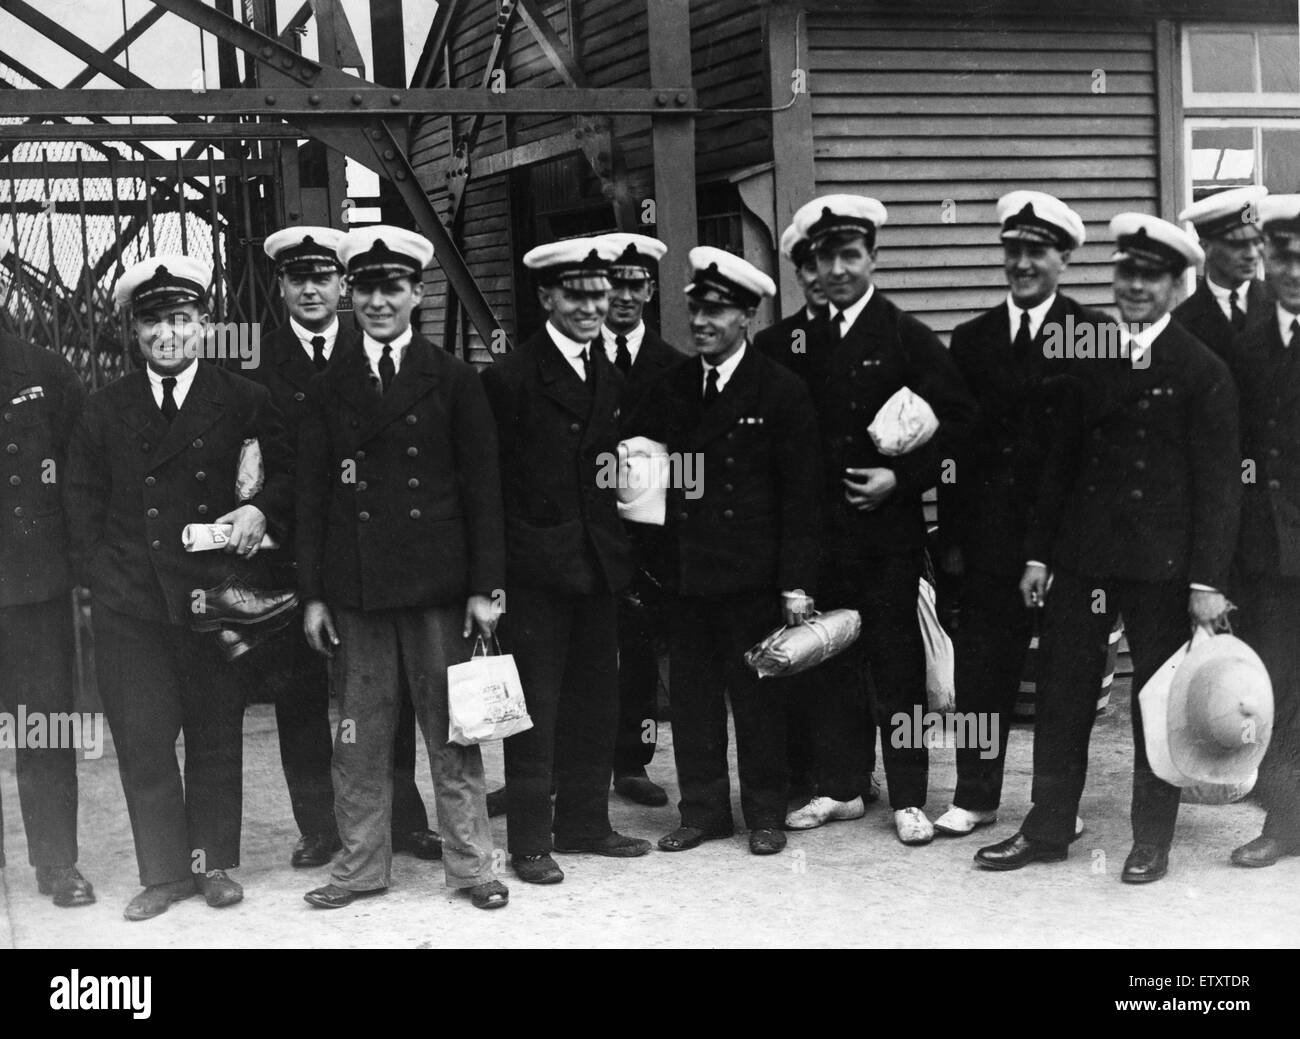 Alcuni dei trenta sette membri dell equipaggio e cinque ufficiali della R101 dirigibile visto qui attorno al bordo del malato volo stregate a Cardington il 4 ottobre 1930. In aggiunta all'equipaggio del volo effettuato sei funzionari della Royal dirigibile funziona e sei passenge Foto Stock